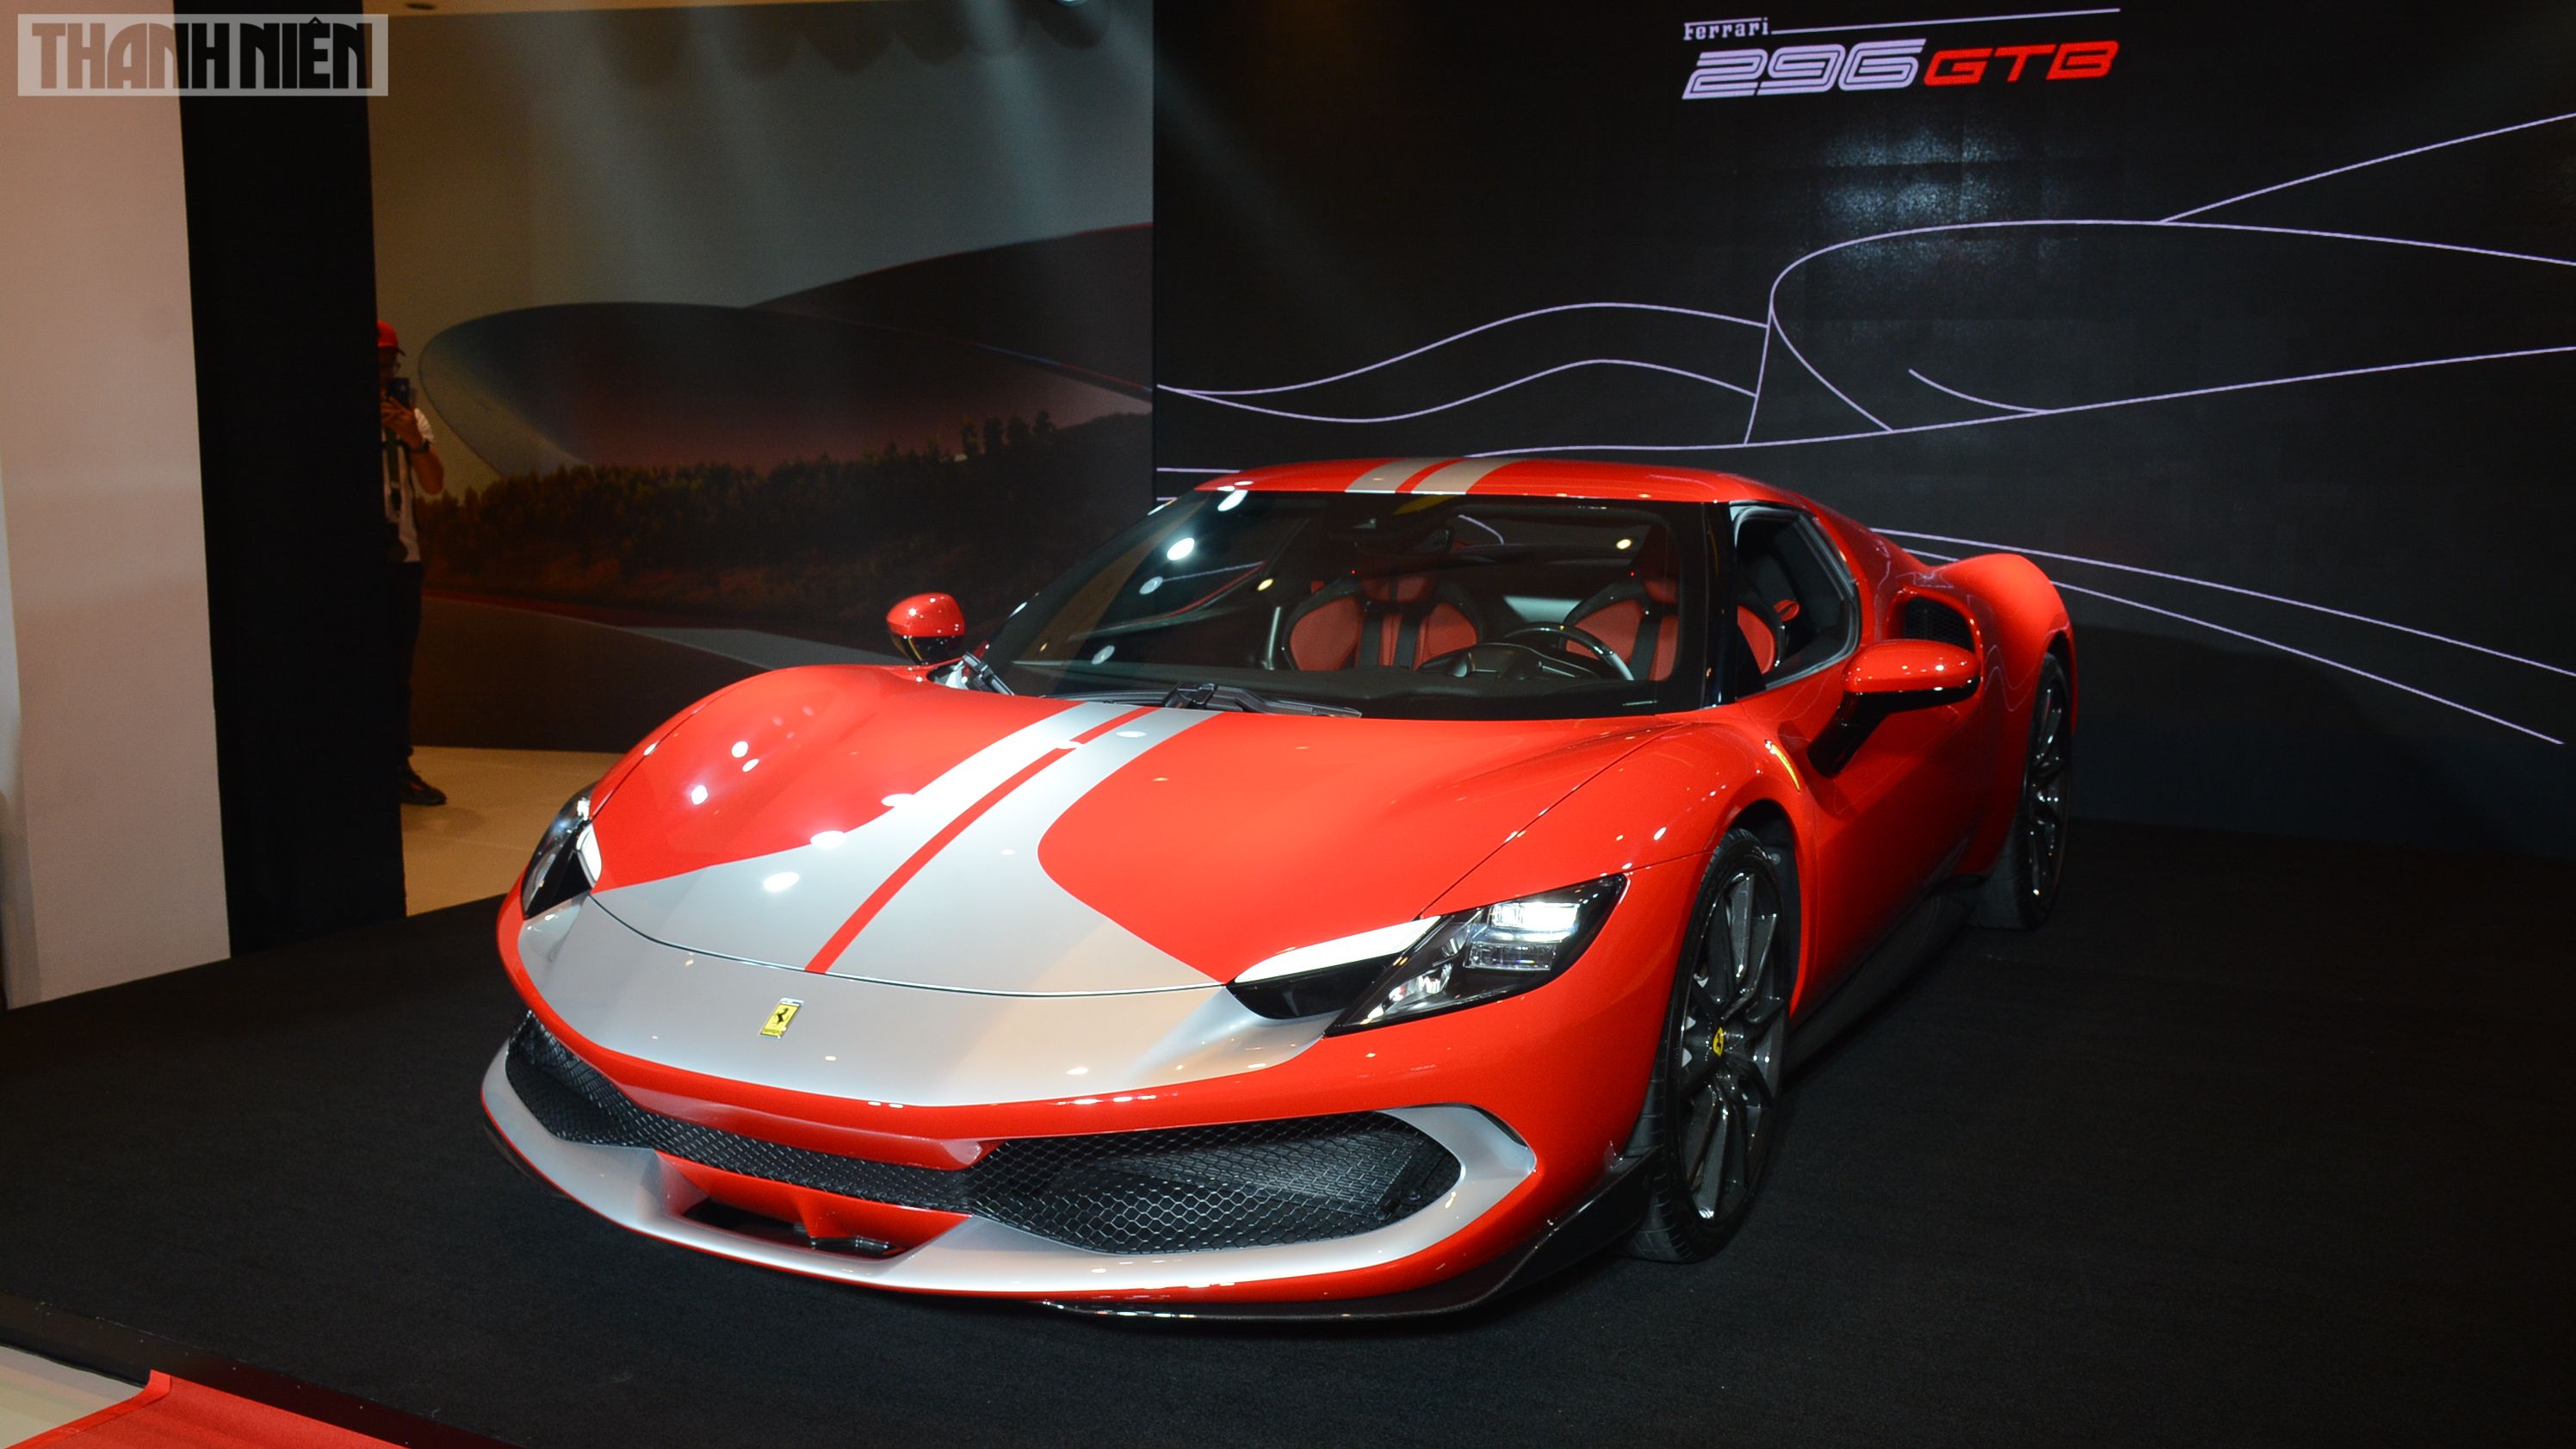 Sau Lamborghini hãng siêu xe Ferrari dừng sản xuất vì dịch Covid19